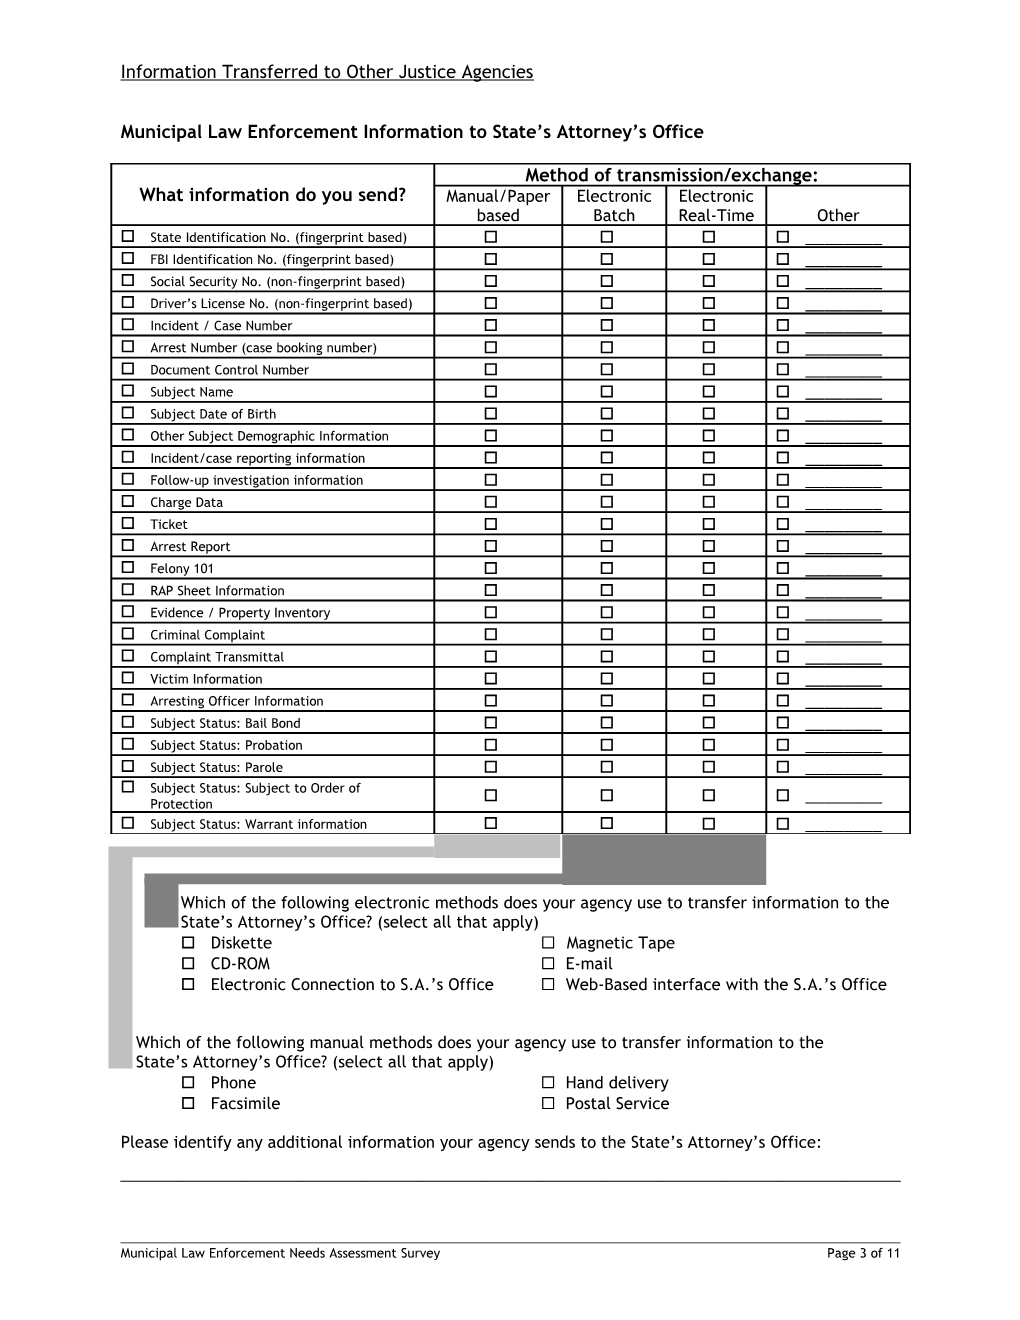 Municipal Law Enforcement Information Management Survey